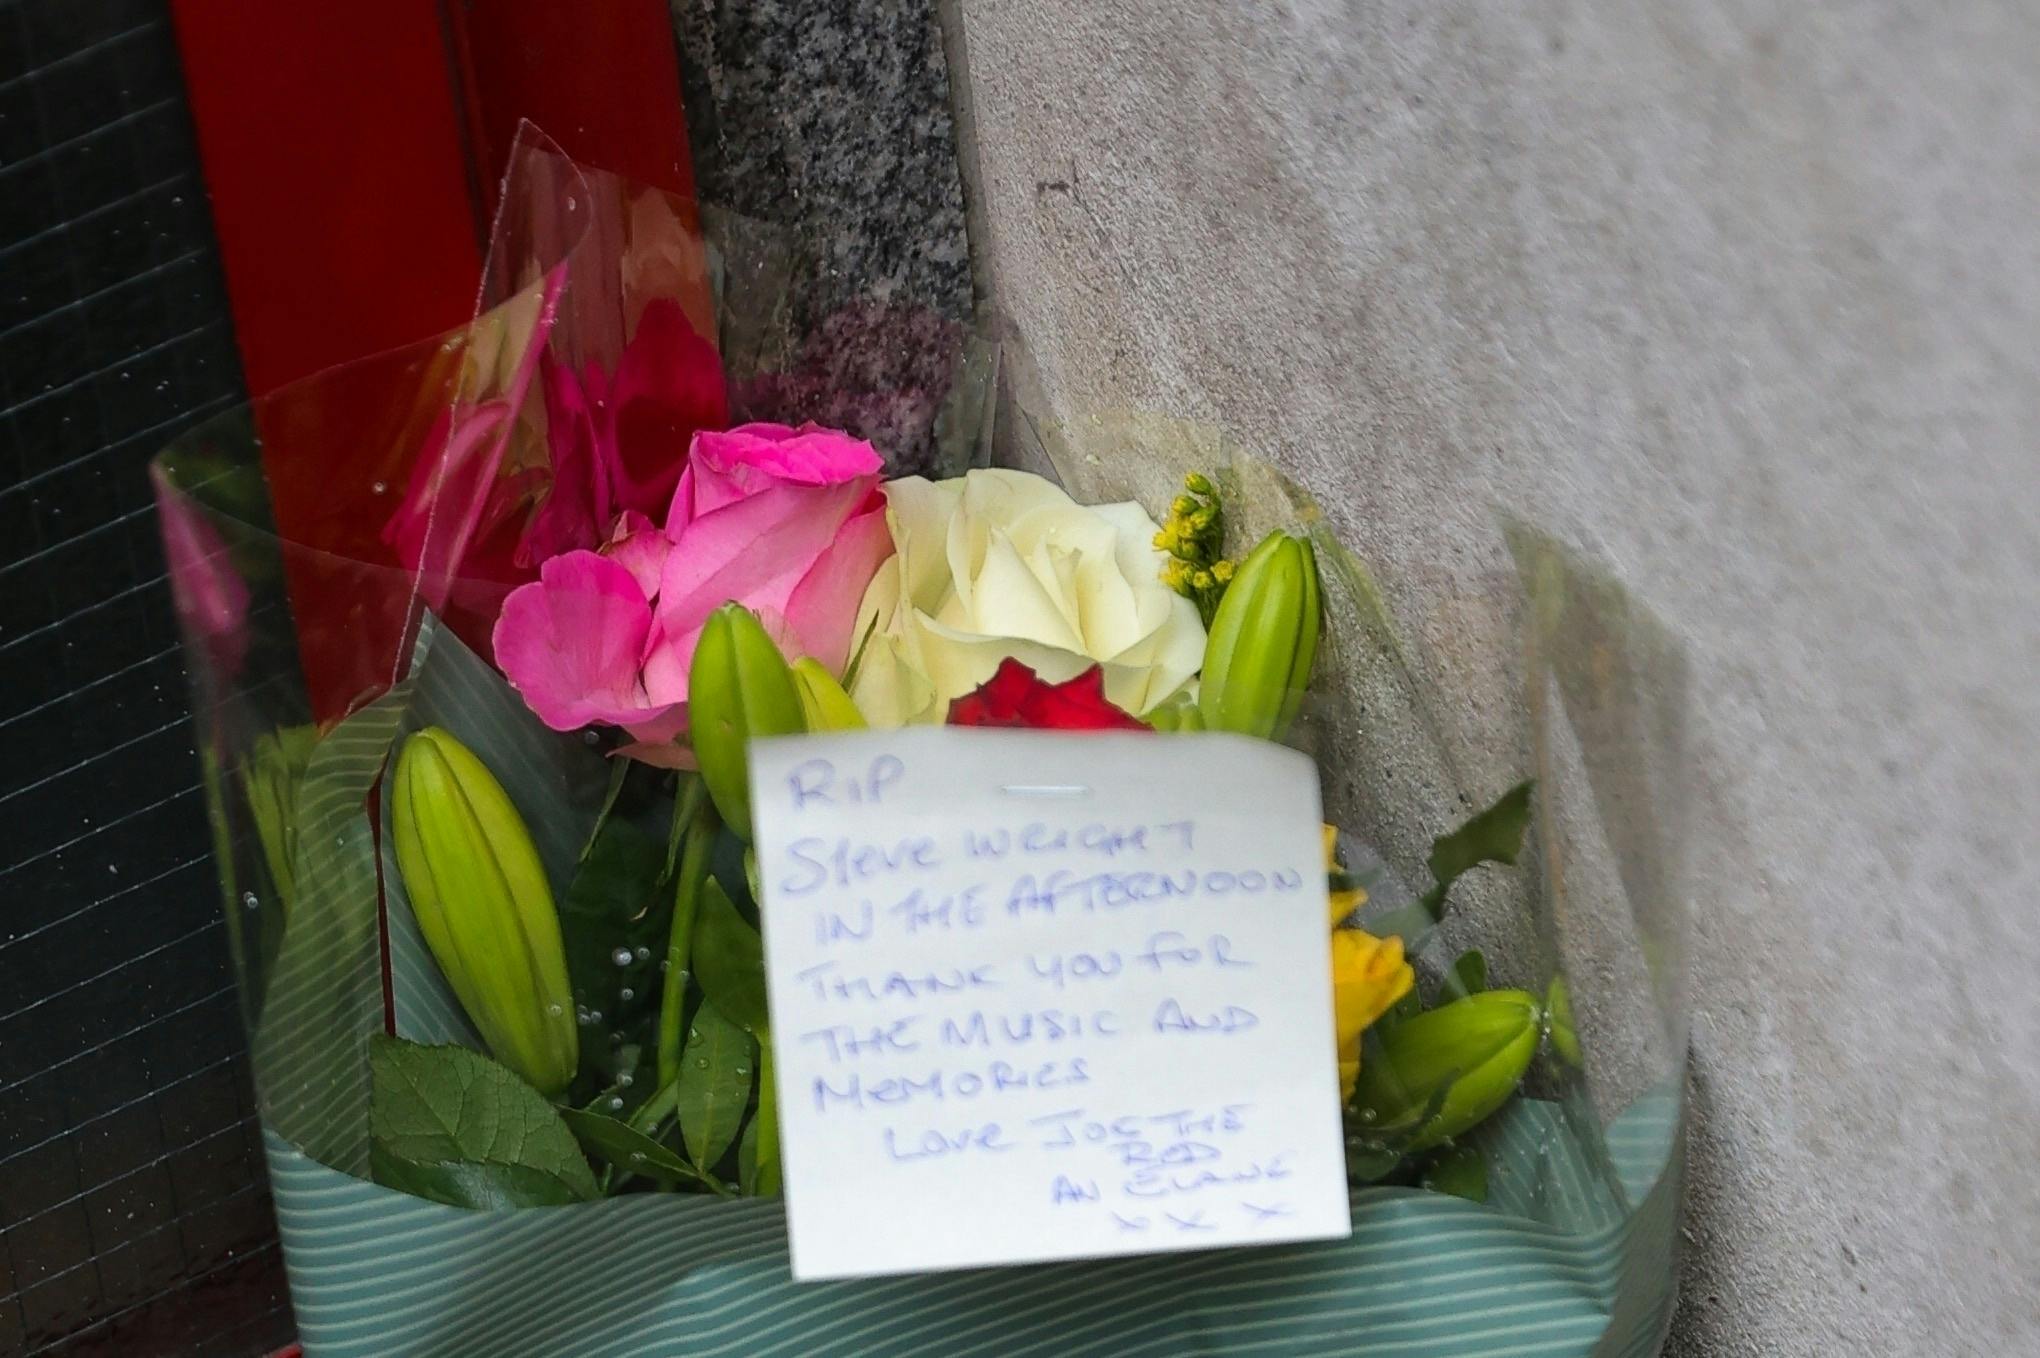 Radiolyttere har lagt blomster foran Steve Wrights lejlighed i det centrale London 